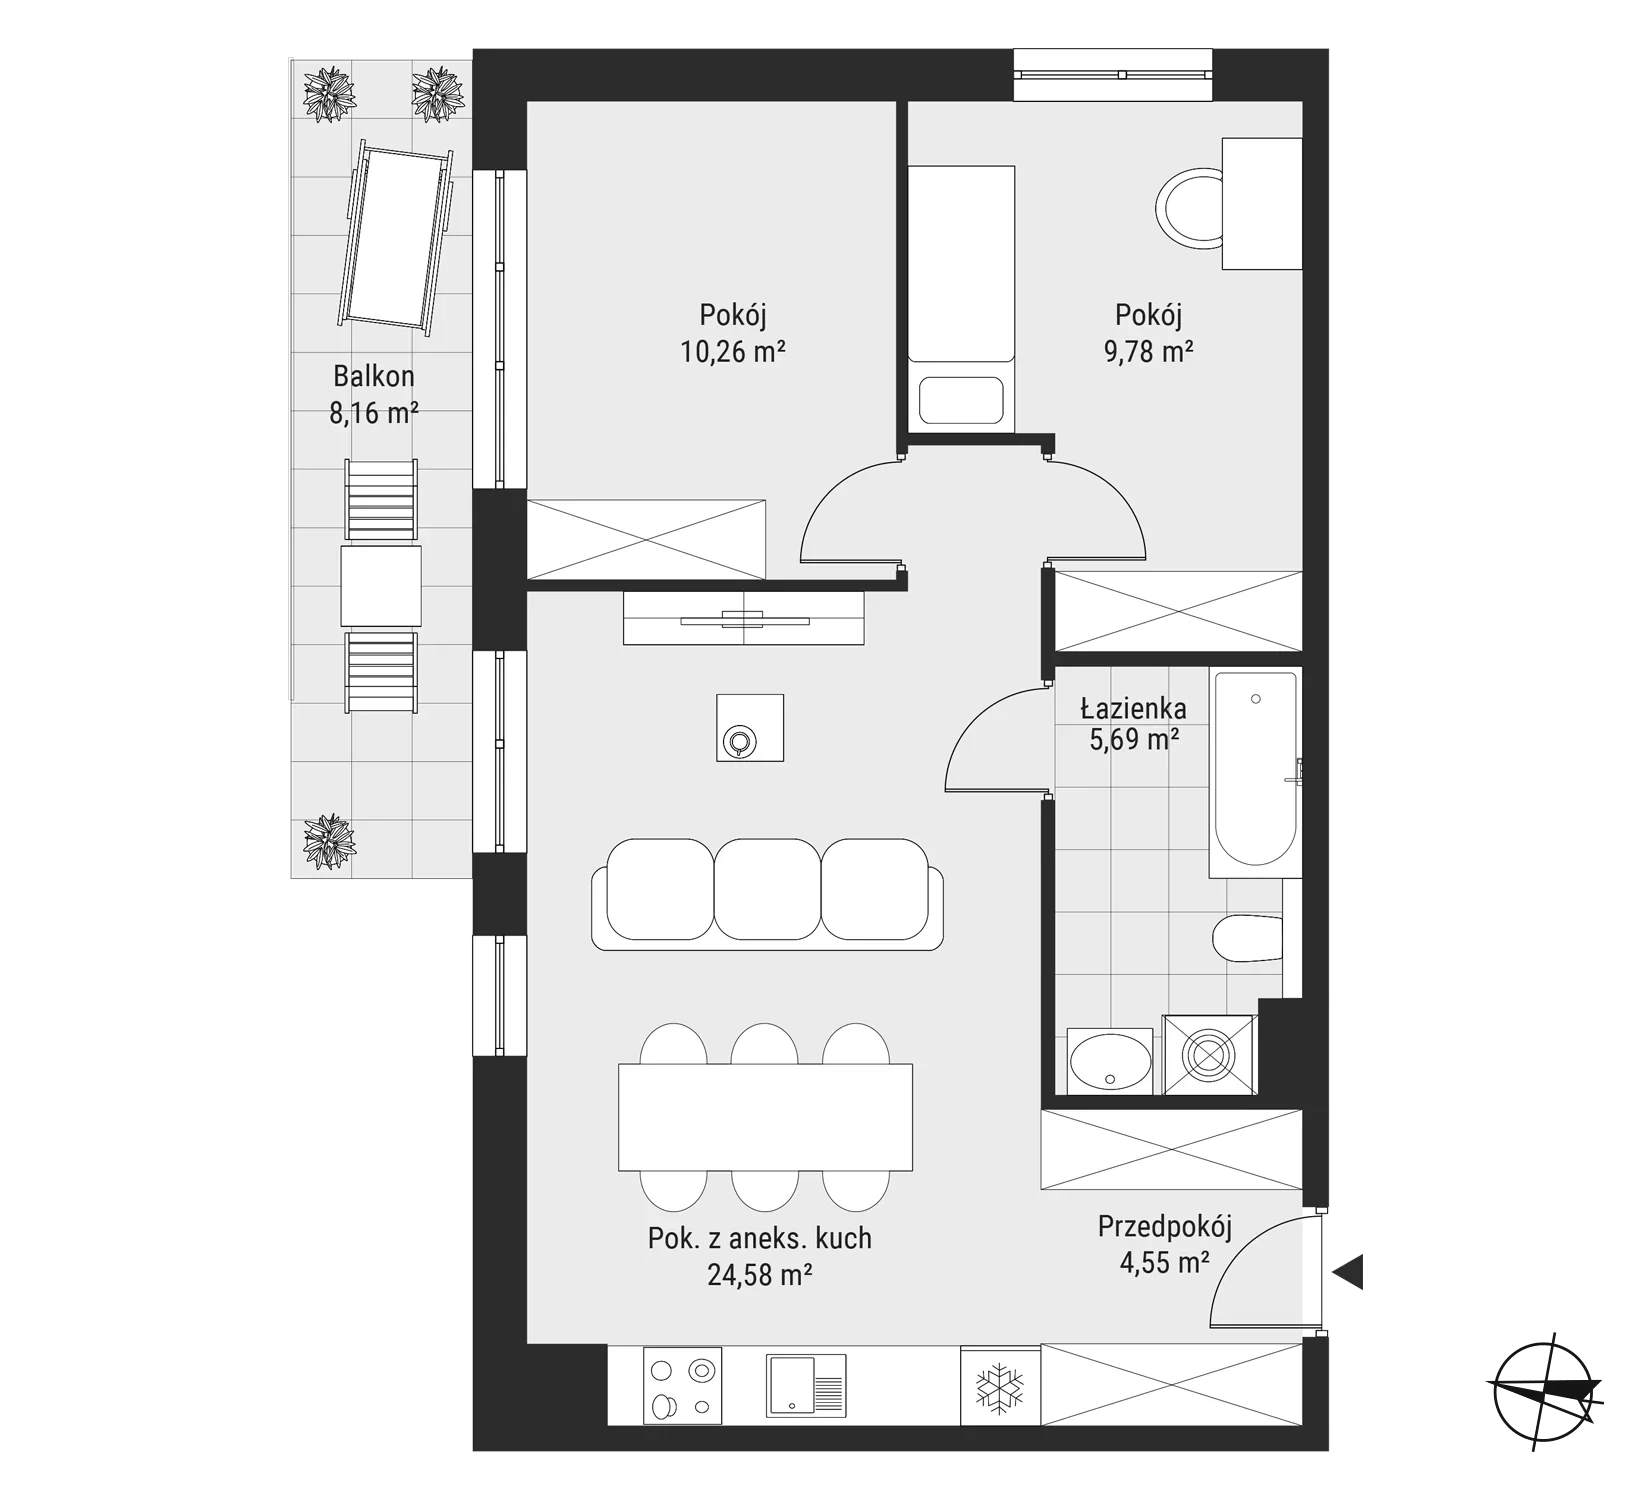 Mieszkanie 54,86 m², piętro 1, oferta nr mieszkanie 13, Bytkowska 3.0, Katowice, Wełnowiec-Józefowiec, ul. Bytkowska